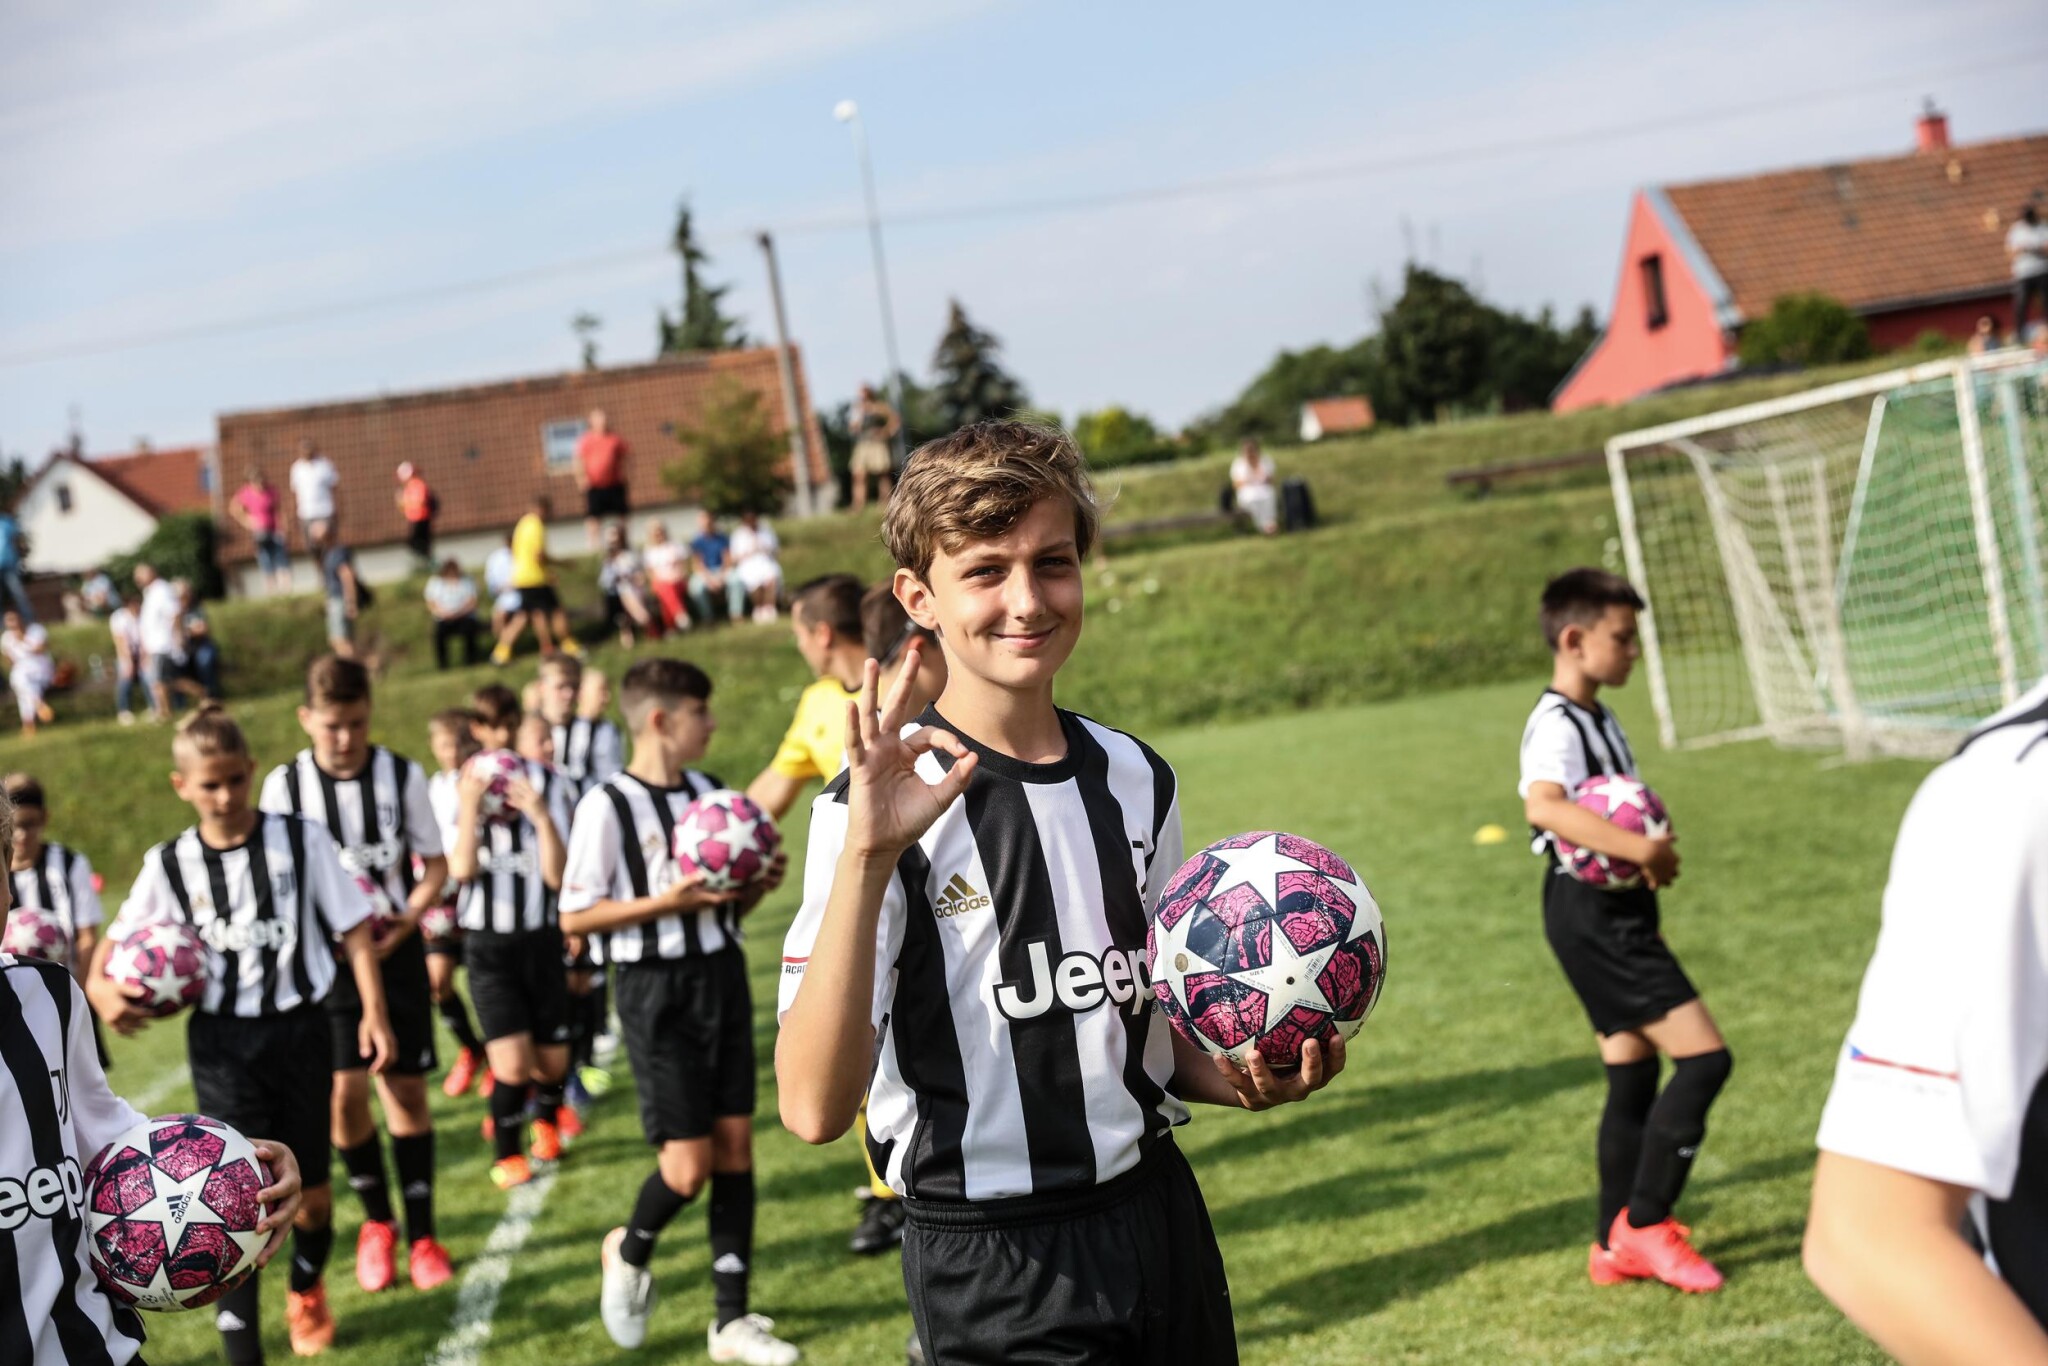 Slavný Juventus loví v Česku. Spíše než hráče chce vychovávat fanoušky